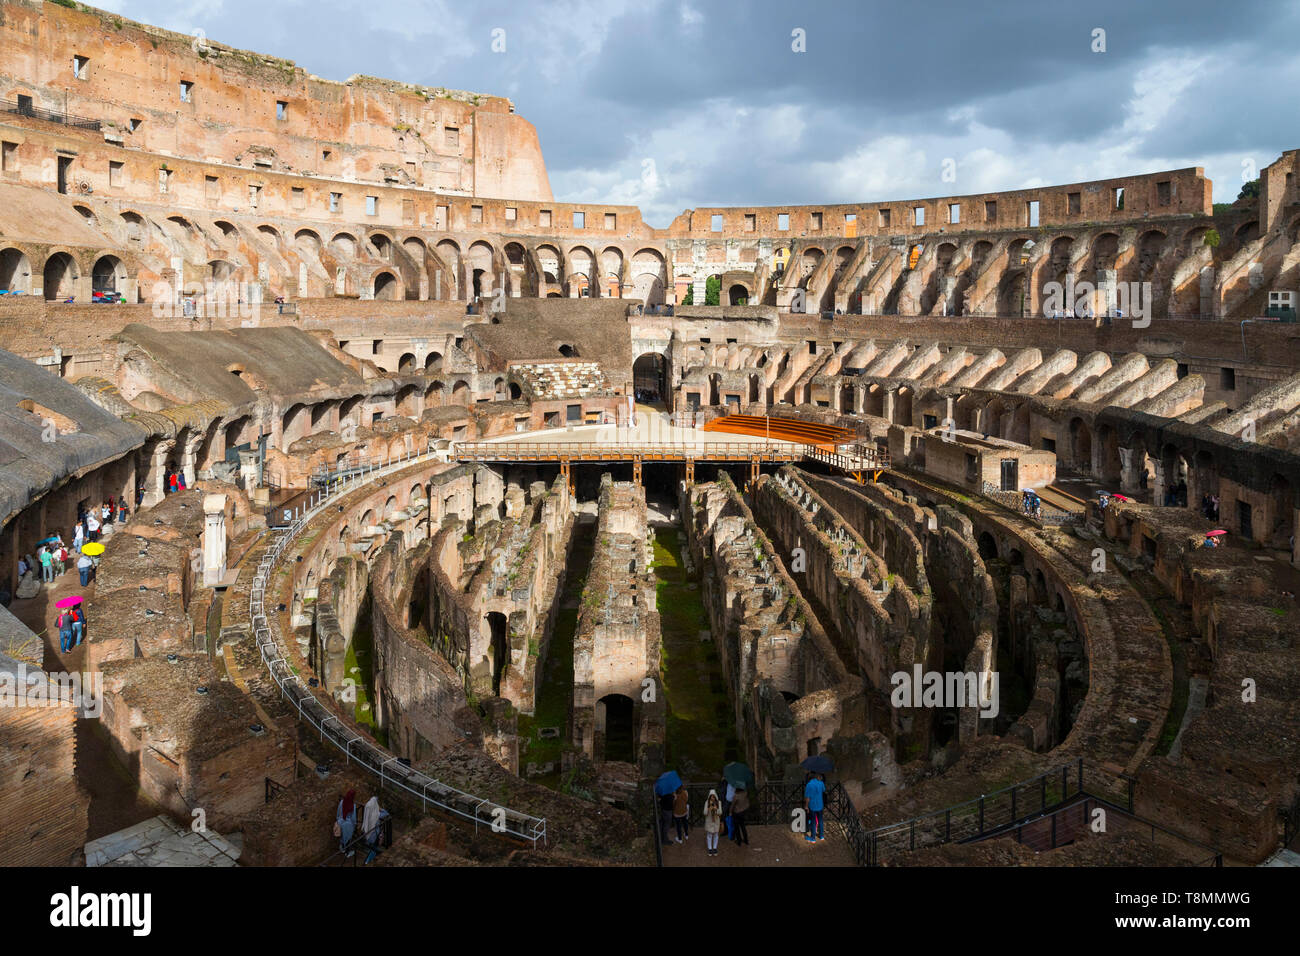 Italia, Roma: vestigios romanos del Coliseo (o Coliseo), el Coliseo, el sitio turístico registrado como un sitio del Patrimonio Mundial de la UNESCO Foto de stock